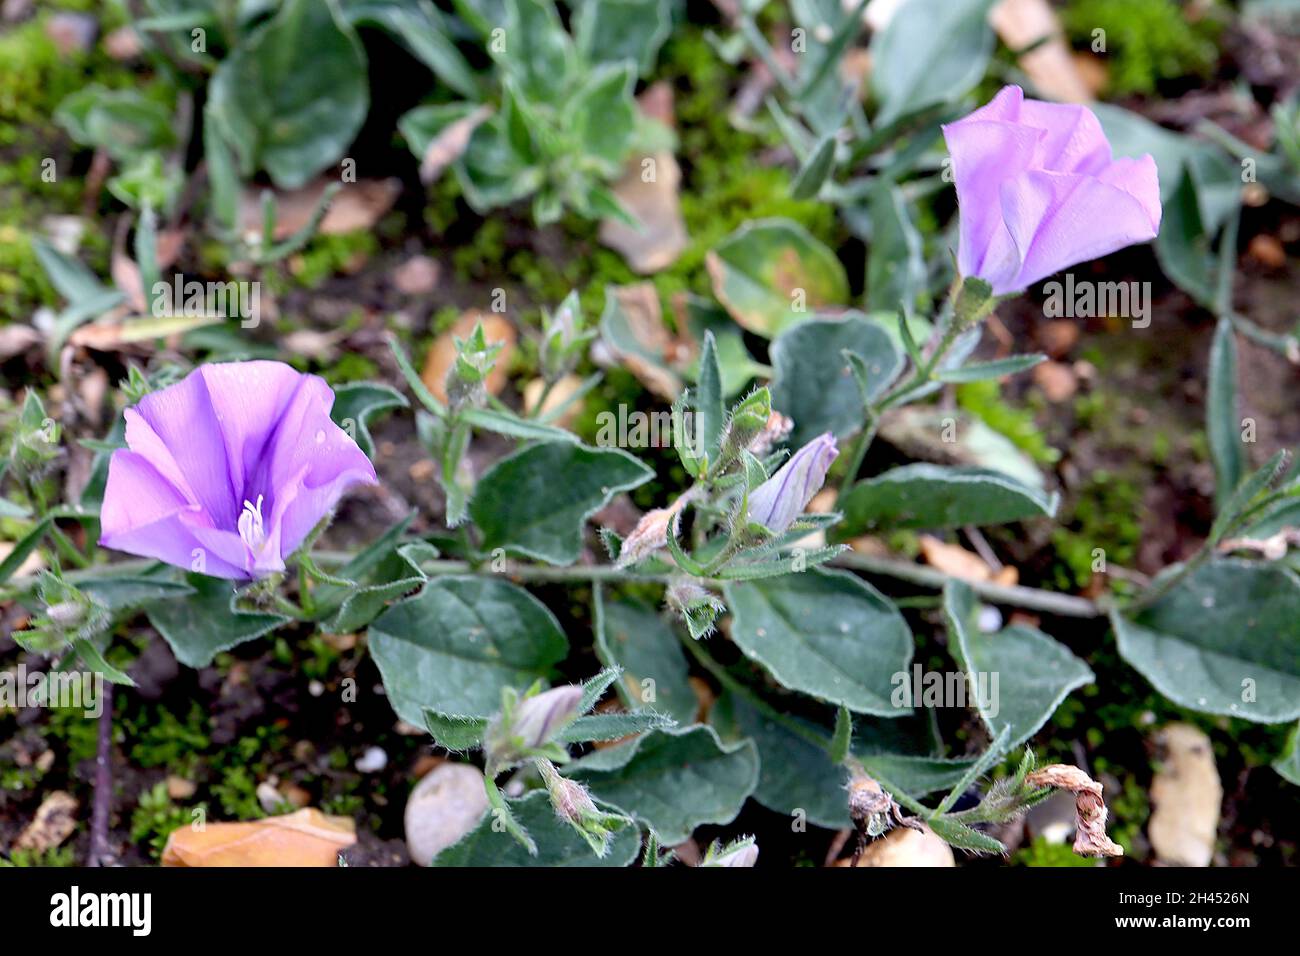 Convolvulus sabatius Blue rock bindweed – fleurs en forme d'entonnoir bleu violet et feuilles ovales vert foncé sur tiges tracées, octobre, Angleterre, Royaume-Uni Banque D'Images